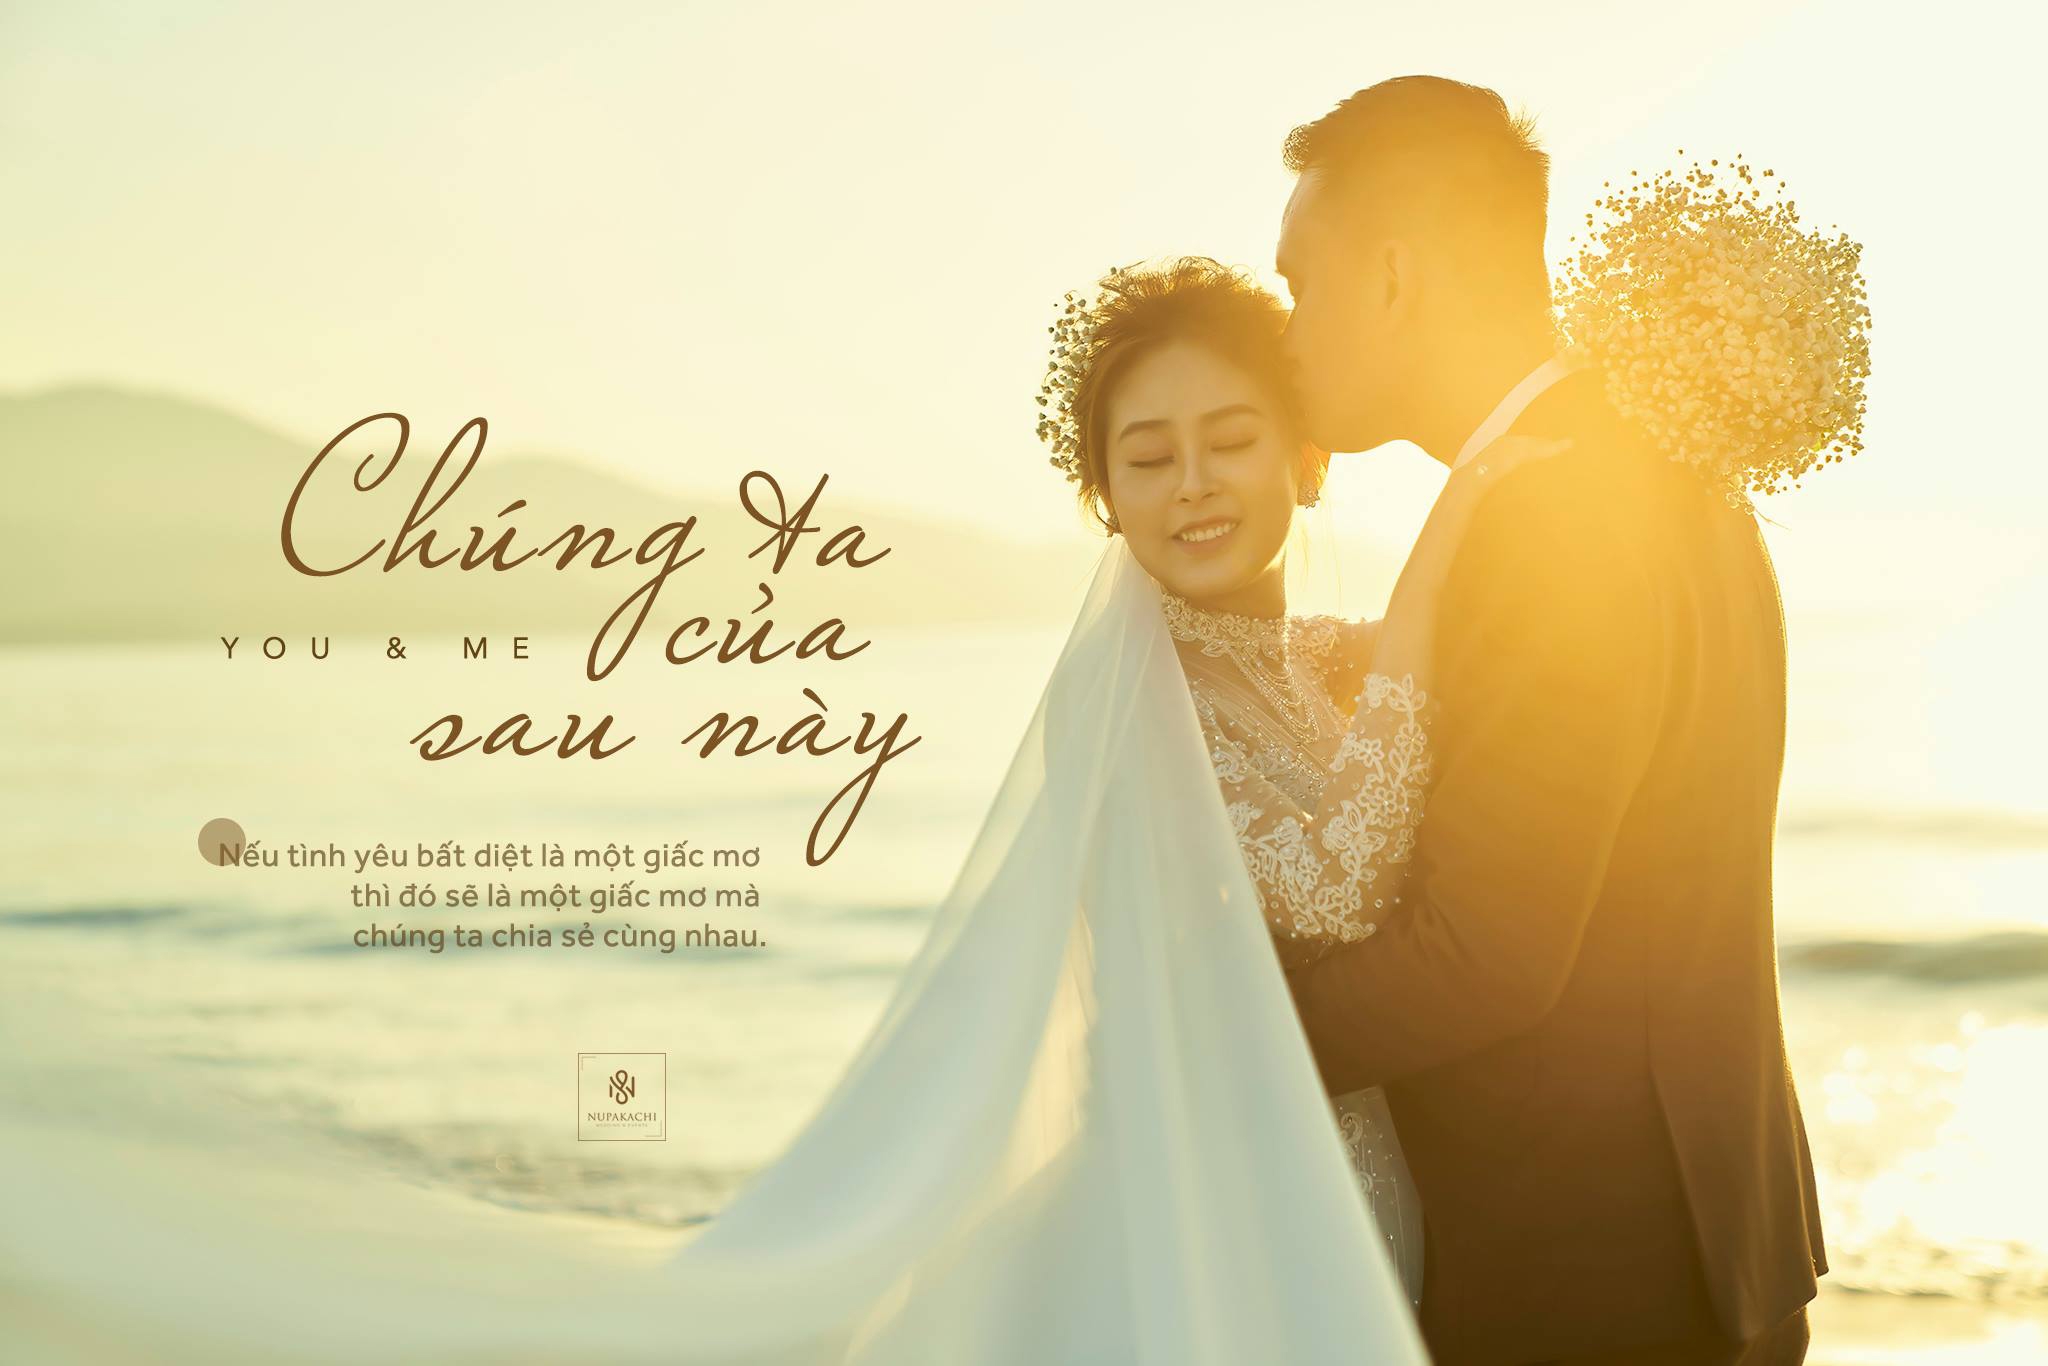 Bạn đang muốn tìm ý tưởng chụp ảnh cưới ở bãi biển? Chúng tôi sẽ giúp bạn tạo ra những bức ảnh cưới thật độc đáo và ấn tượng. Cùng chúng tôi khám phá những gốc cây cổ thụ, những tảng đá hiệu ứng và tận dụng ánh sáng lãng mạn của bình minh.